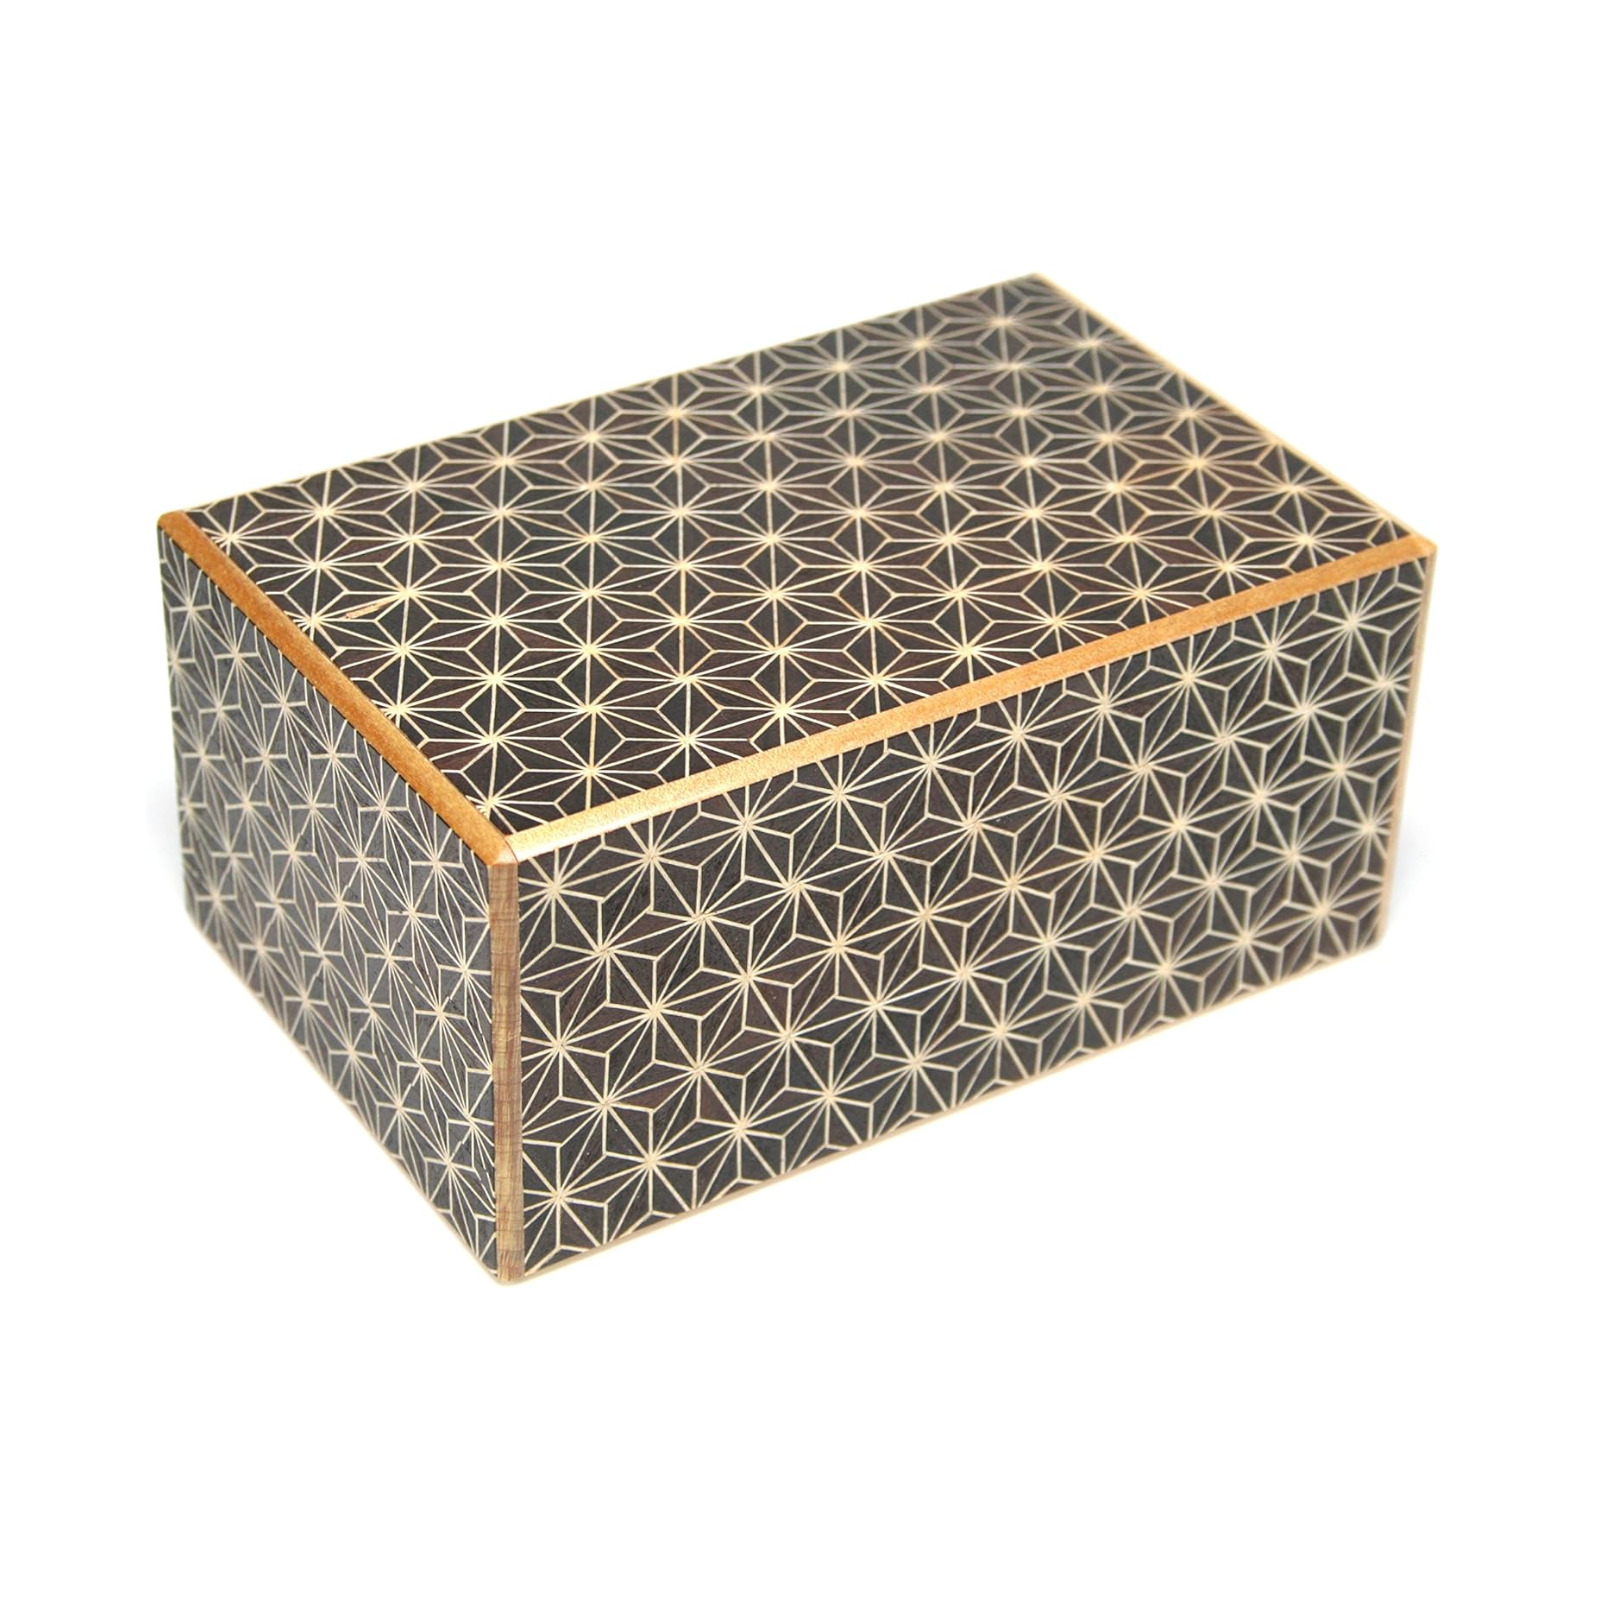 Japanese Wooden Secret Puzzle Box 21 Steps Hakone Yosegi Zaiku Traditional